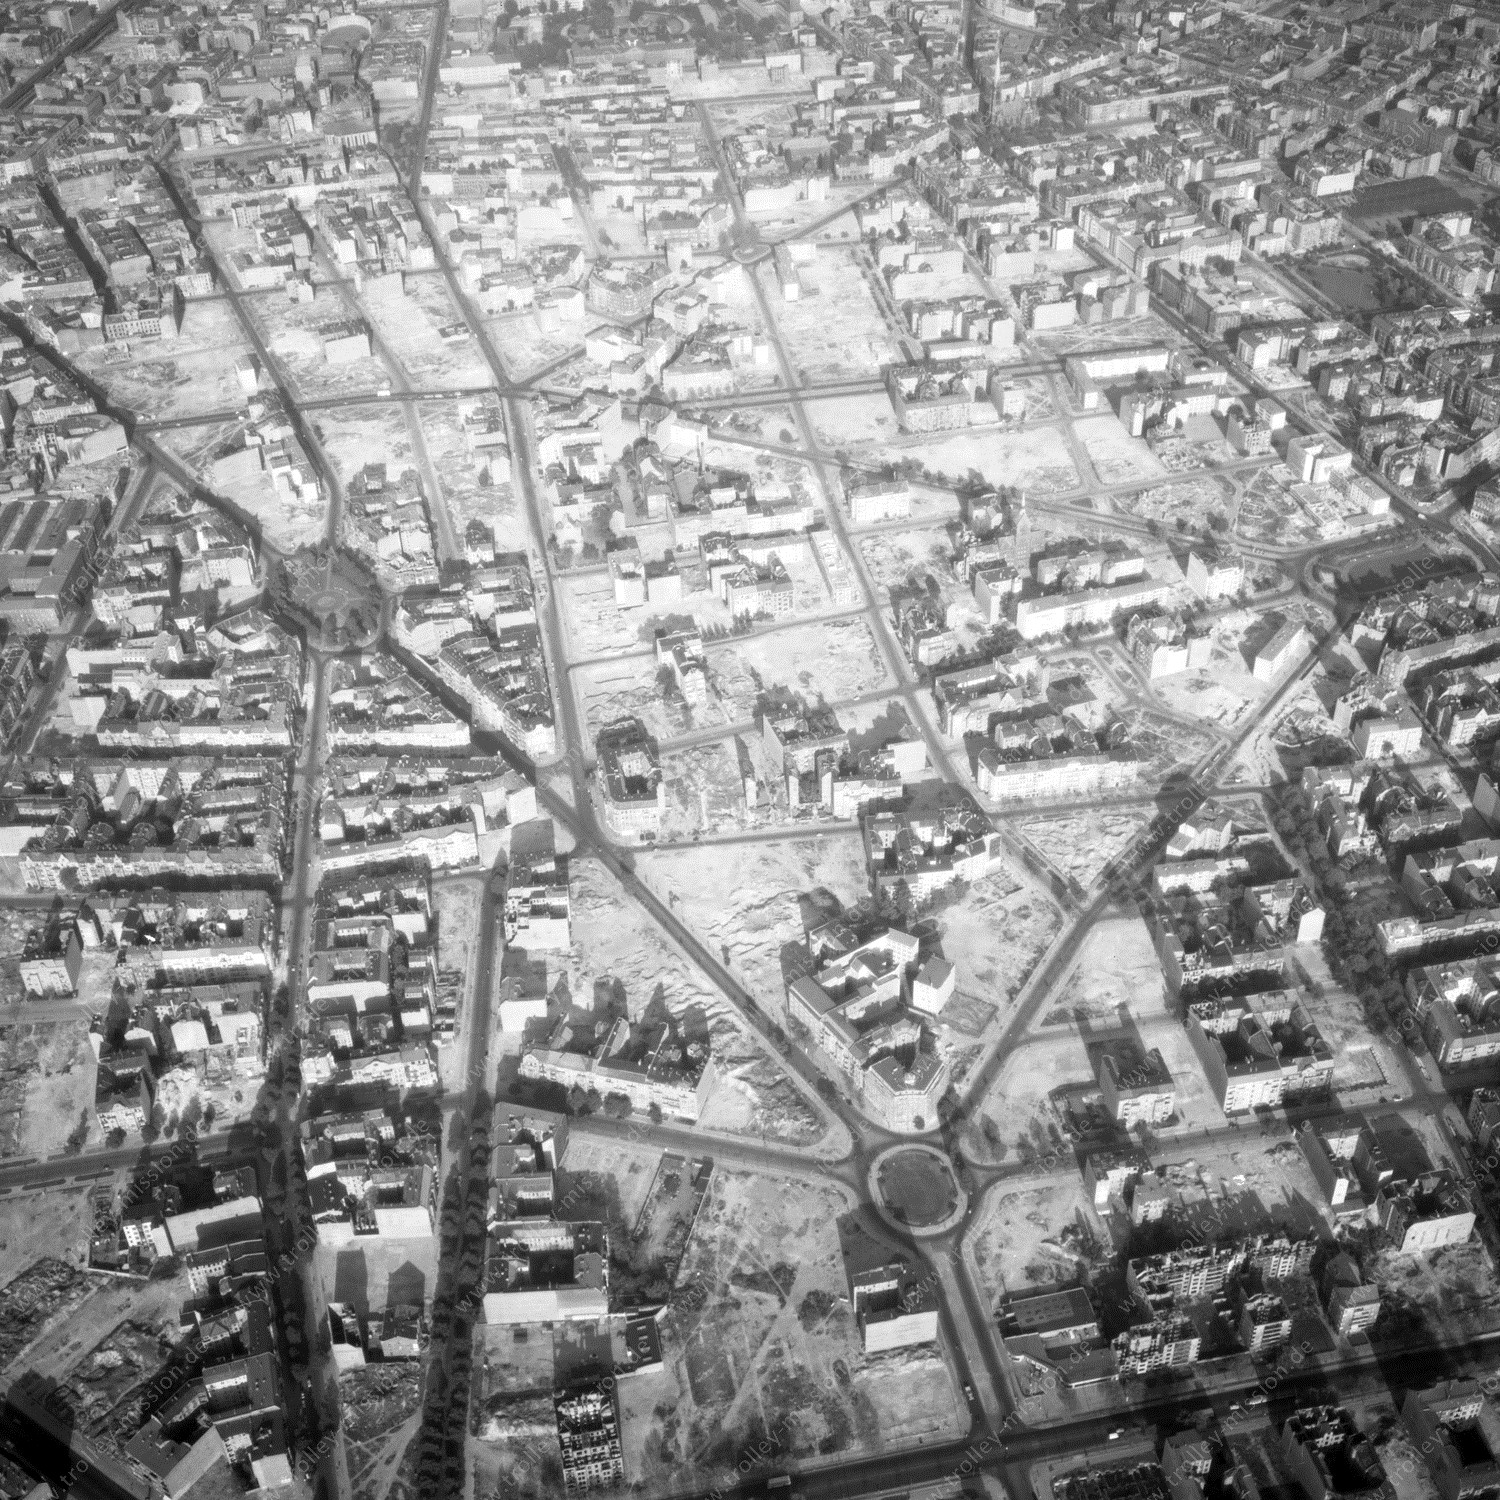 Alte Fotos und Luftbilder von Berlin - Luftbildaufnahme Nr. 07 - Historische Luftaufnahmen von West-Berlin aus dem Jahr 1954 - Flugstrecke Echo